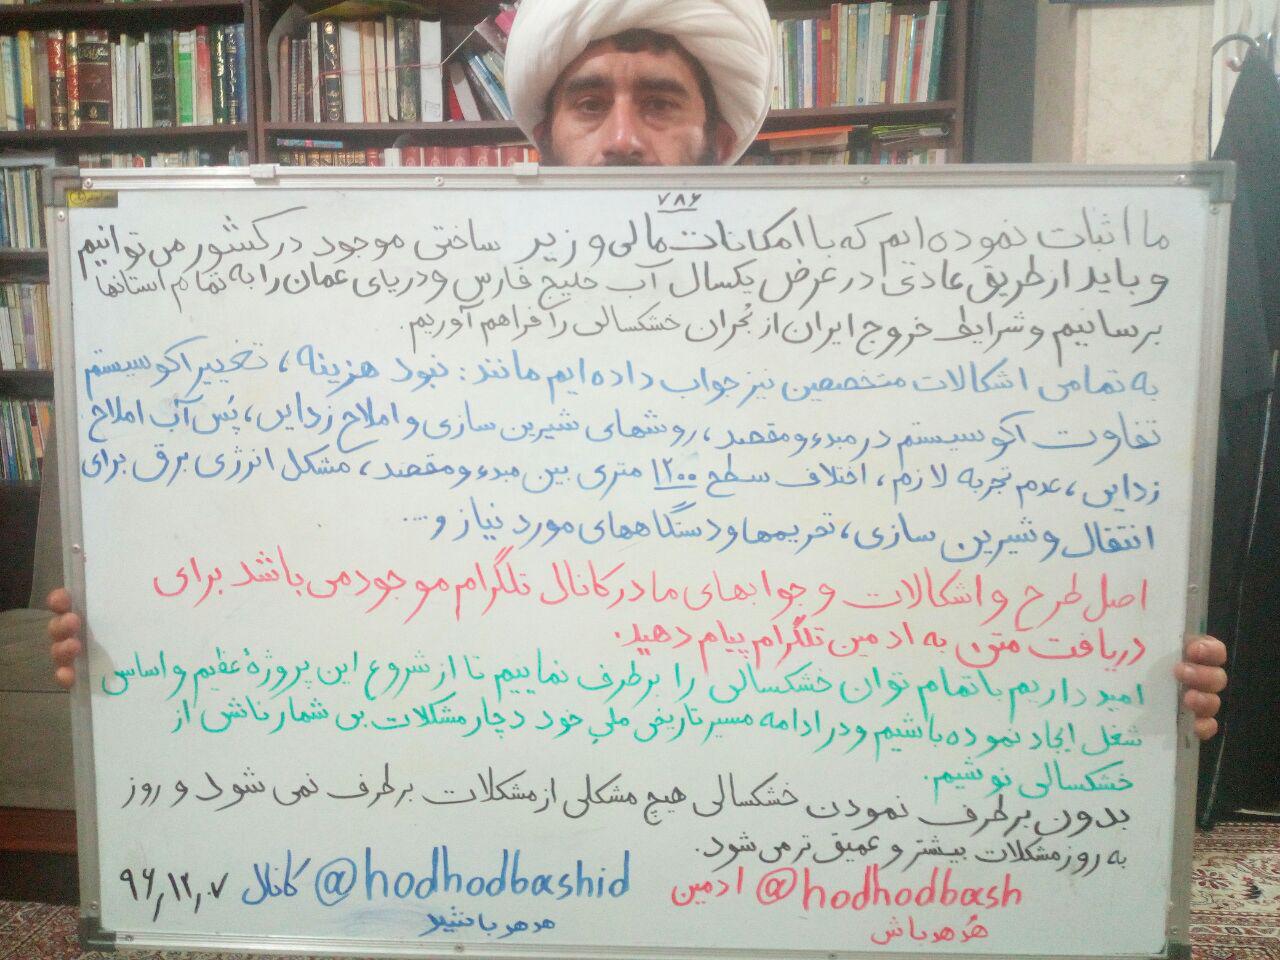 پیام به جناب دکتر حسن روحانی رئیس جمهور جمهوری اسلامی ایران